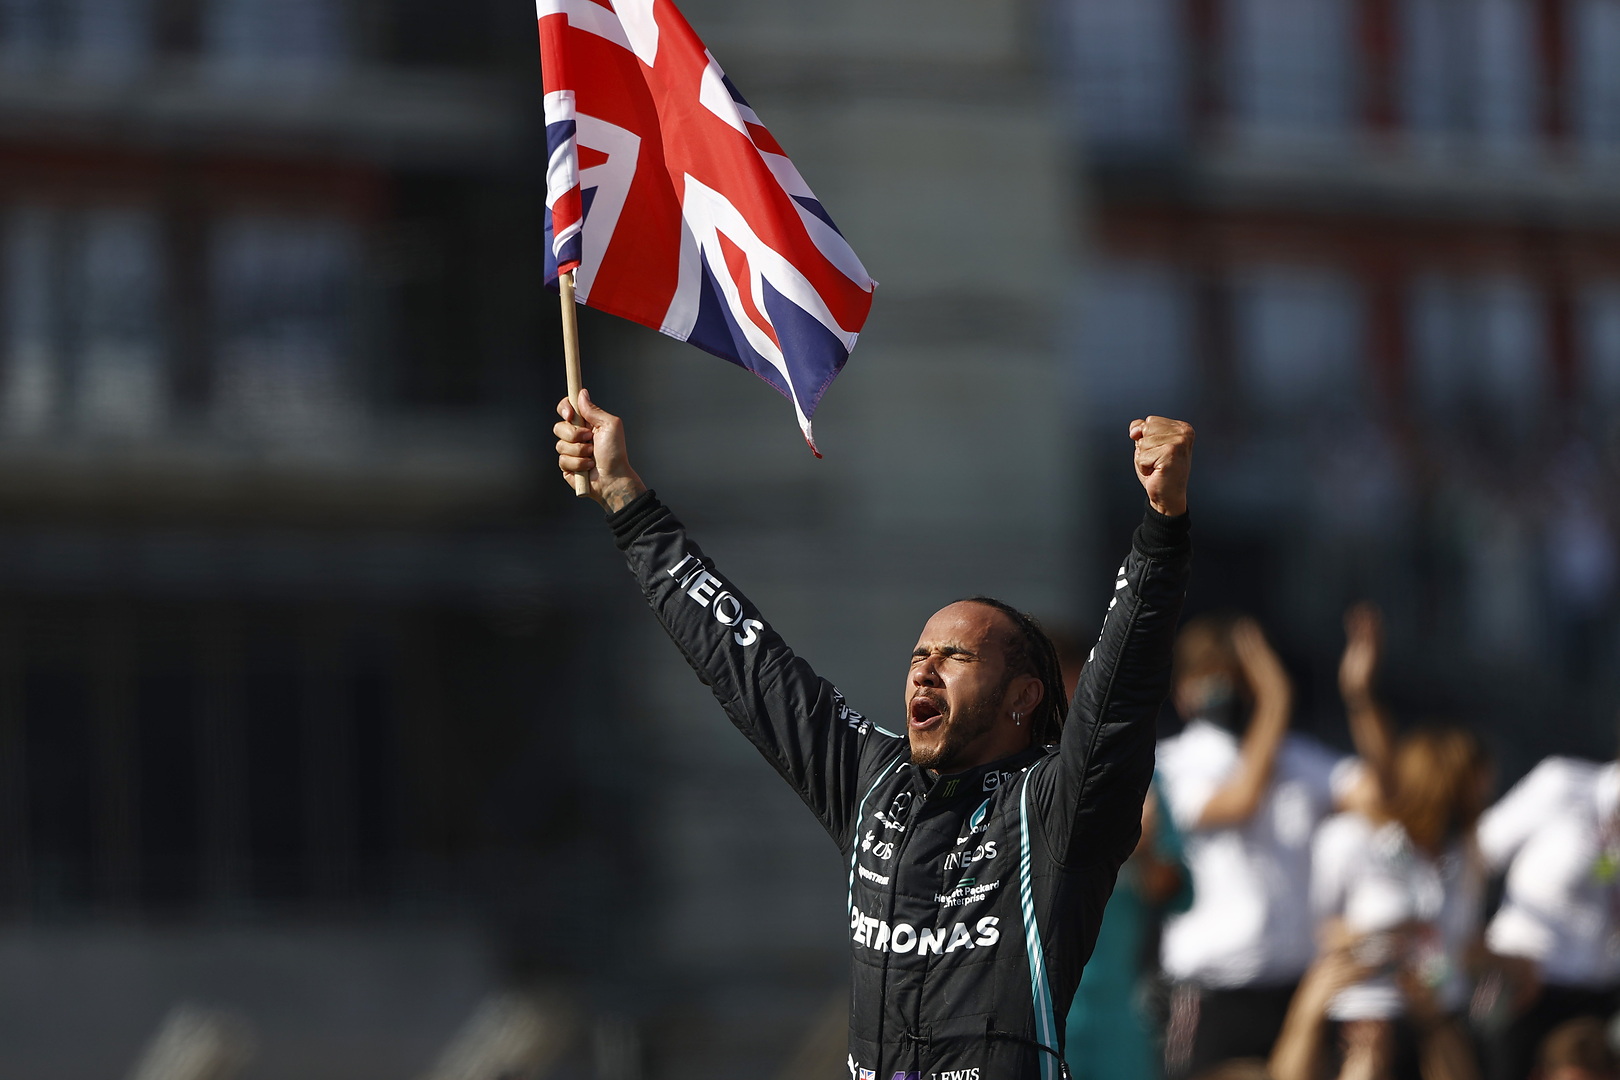 GP Wielkiej Brytanii: zachowanie niegodne mistrza świata